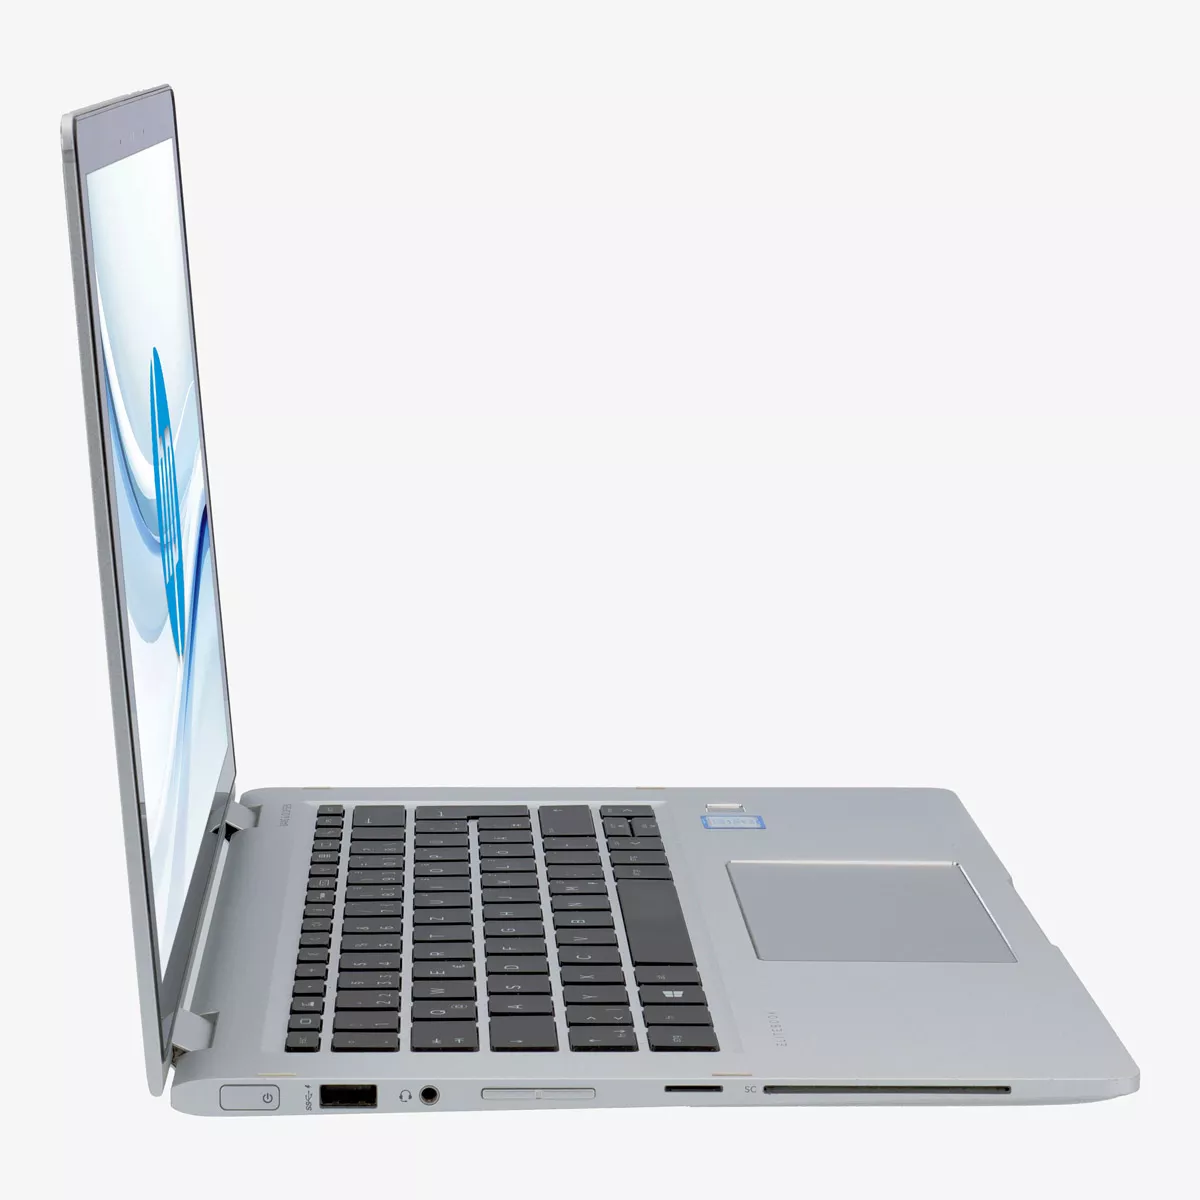 HP EliteBook x360 1030 G2 Core i5 7300U 240 GB M.2 SSD Touchscreen Webcam A+